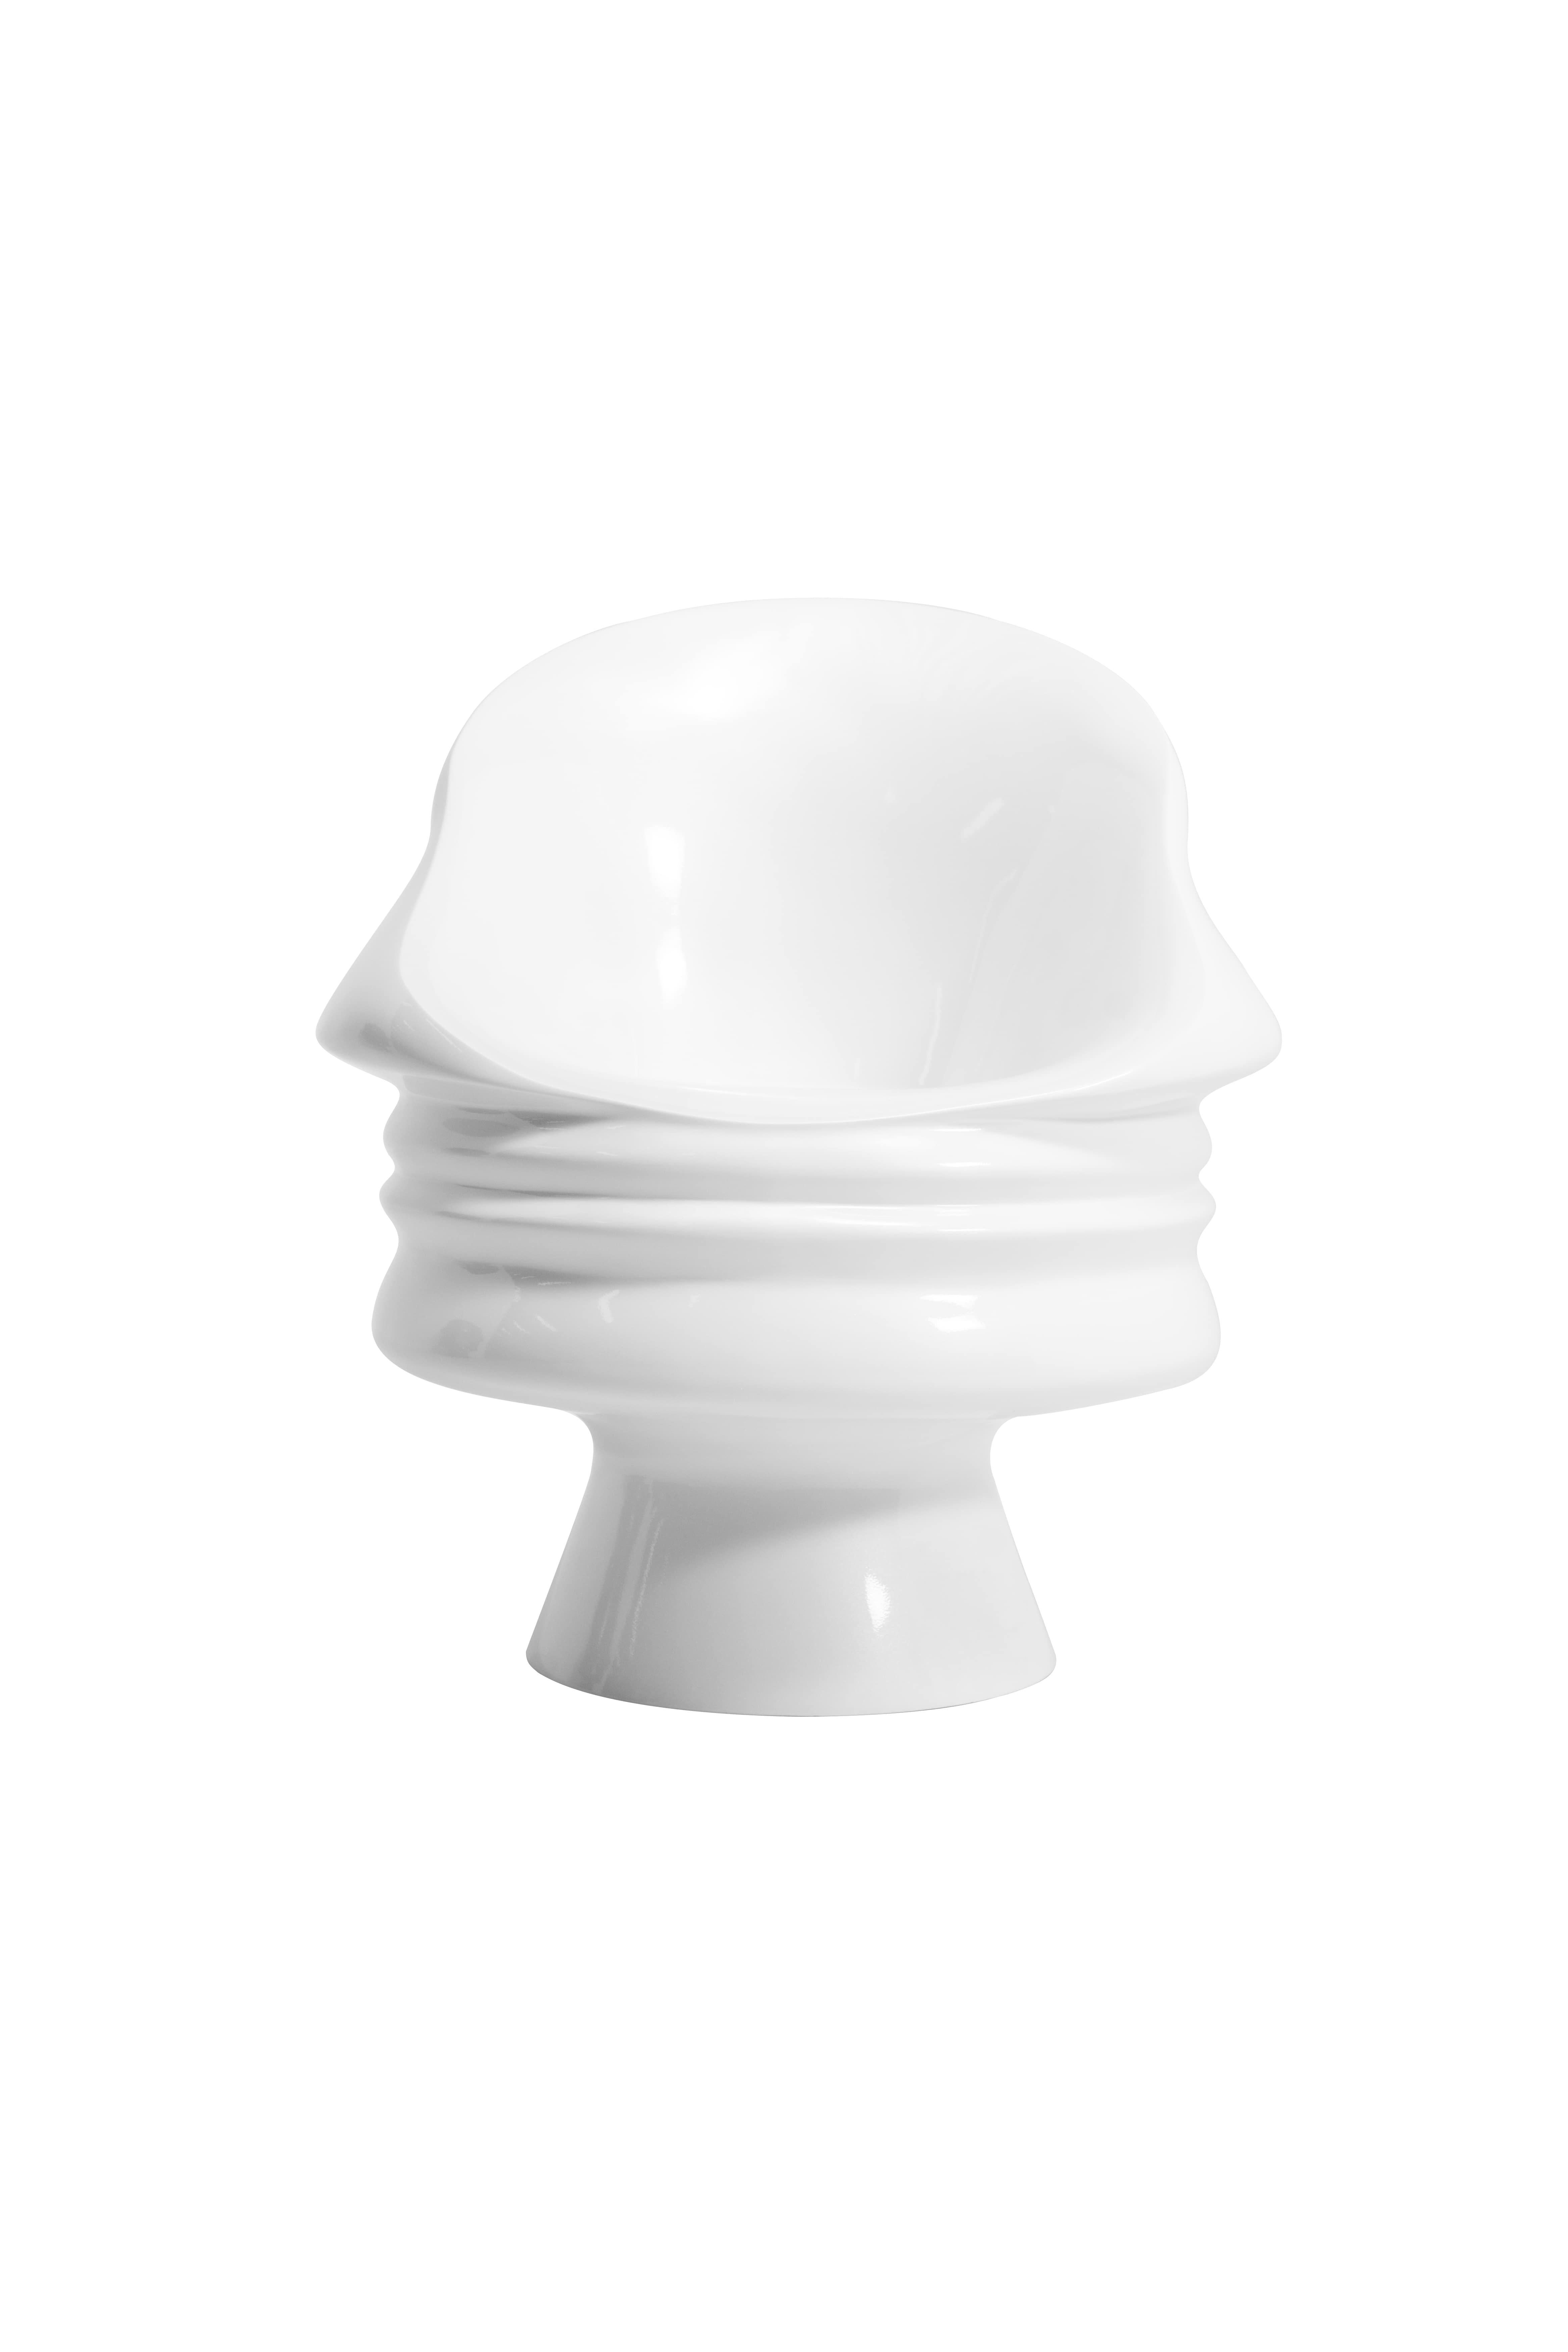 La chaise ergonomique ego blanc perle, fabriquée en résine nautique luxueuse, présente des touches de visage humain astucieusement dessinées à travers son dossier. Il est recouvert d'un revêtement résistant aux intempéries. Si quelqu'un peut